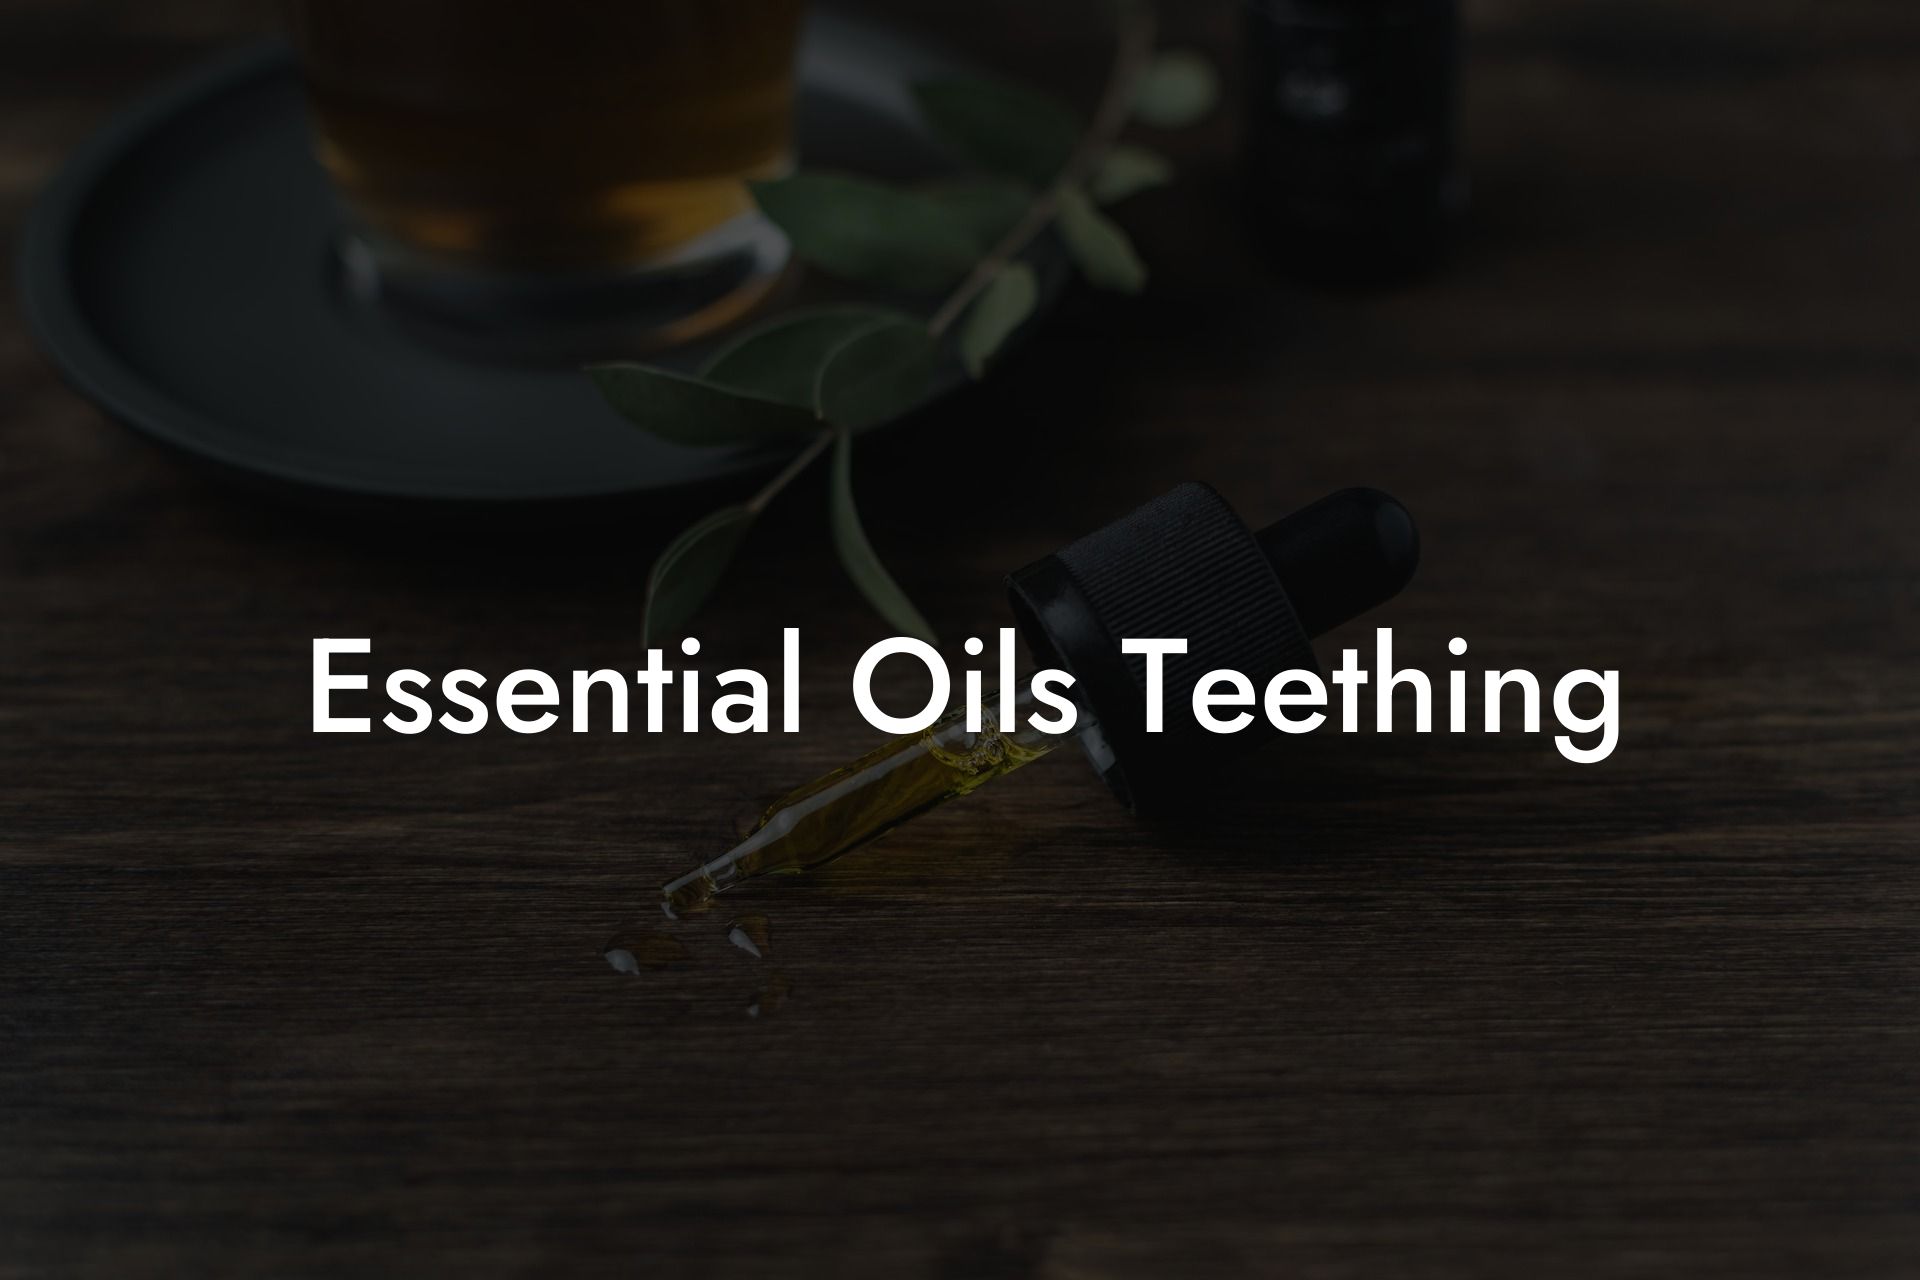 Essential Oils Teething